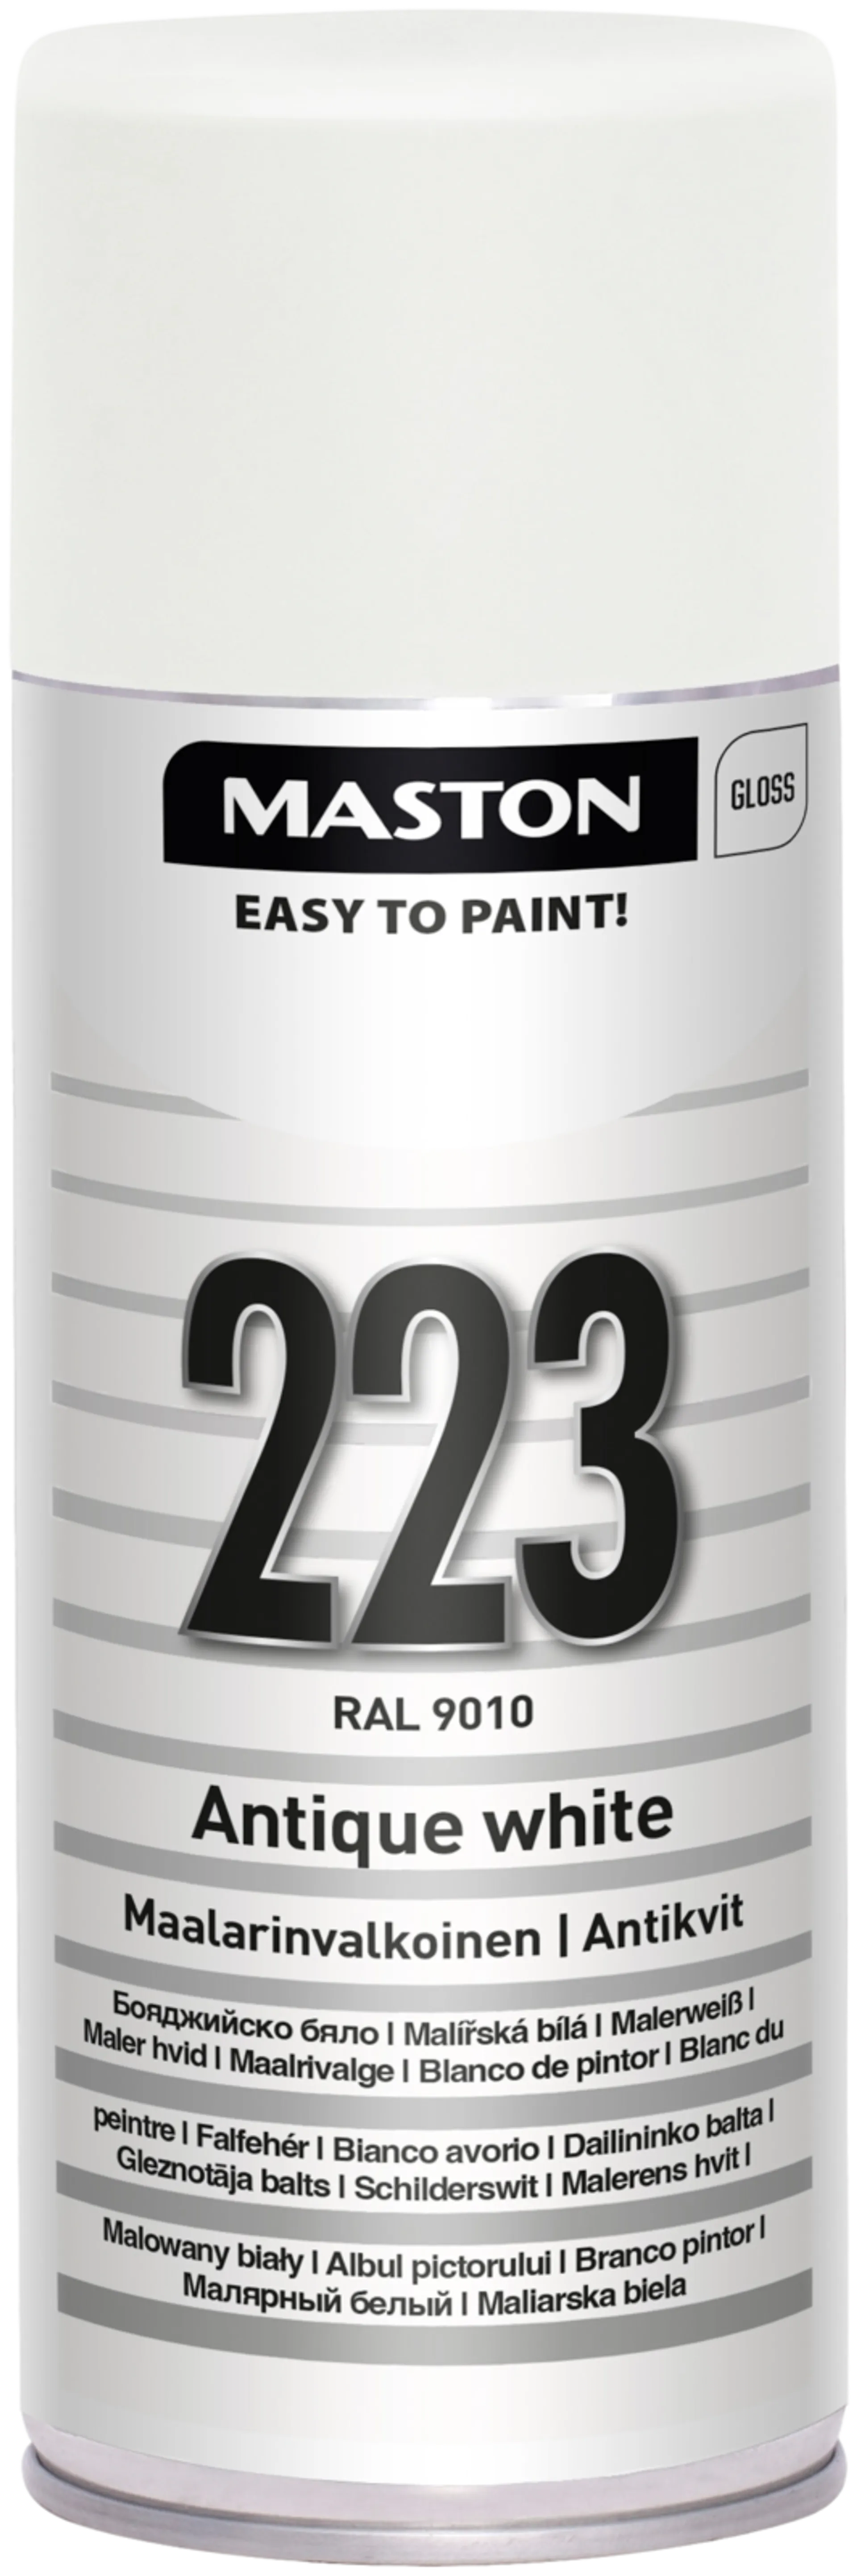 Maston ColorMix spraymaali maalarin valkoinen 223 400ml RAL 9010